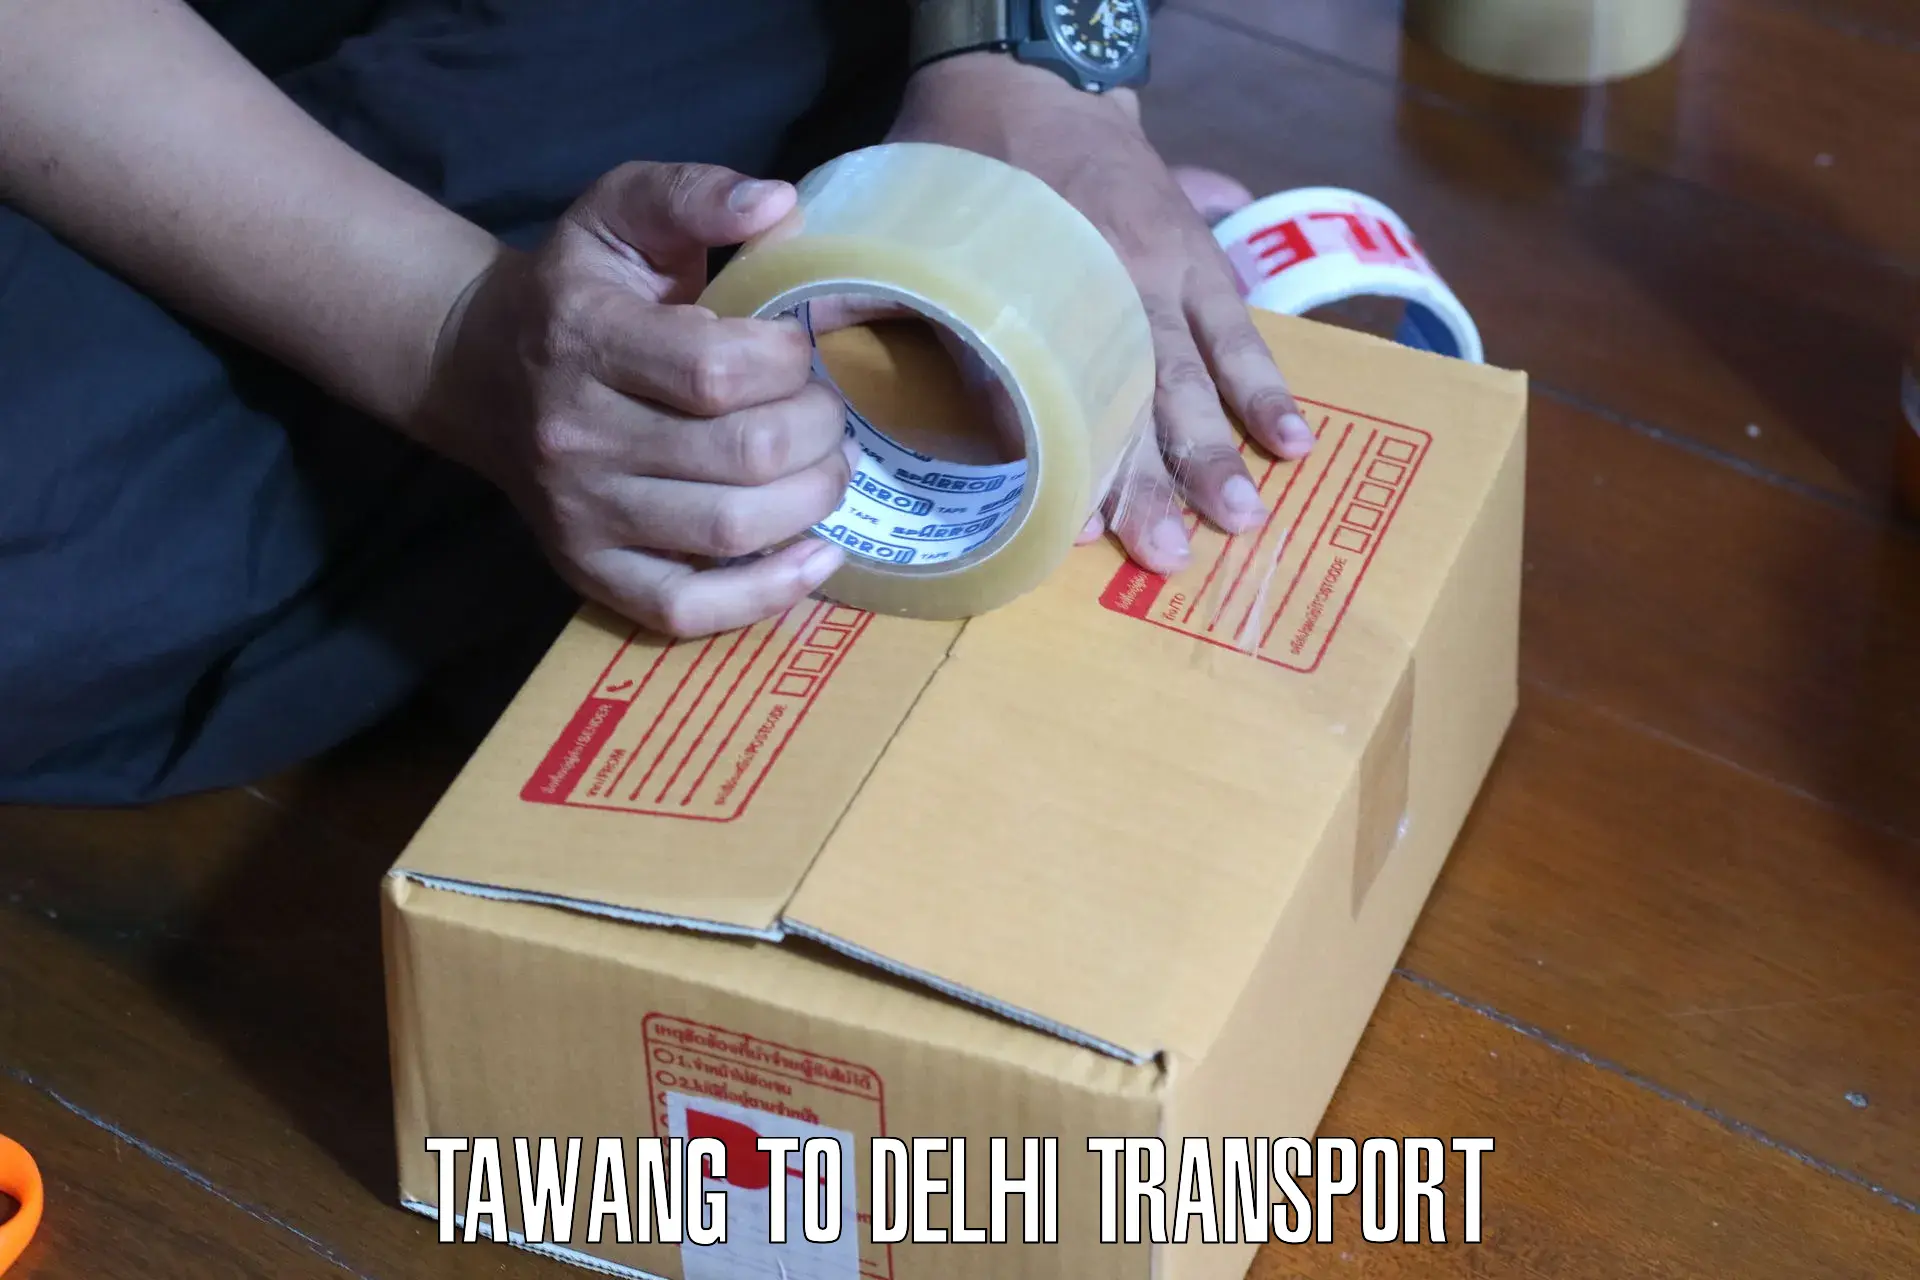 Bike shipping service Tawang to Kalkaji